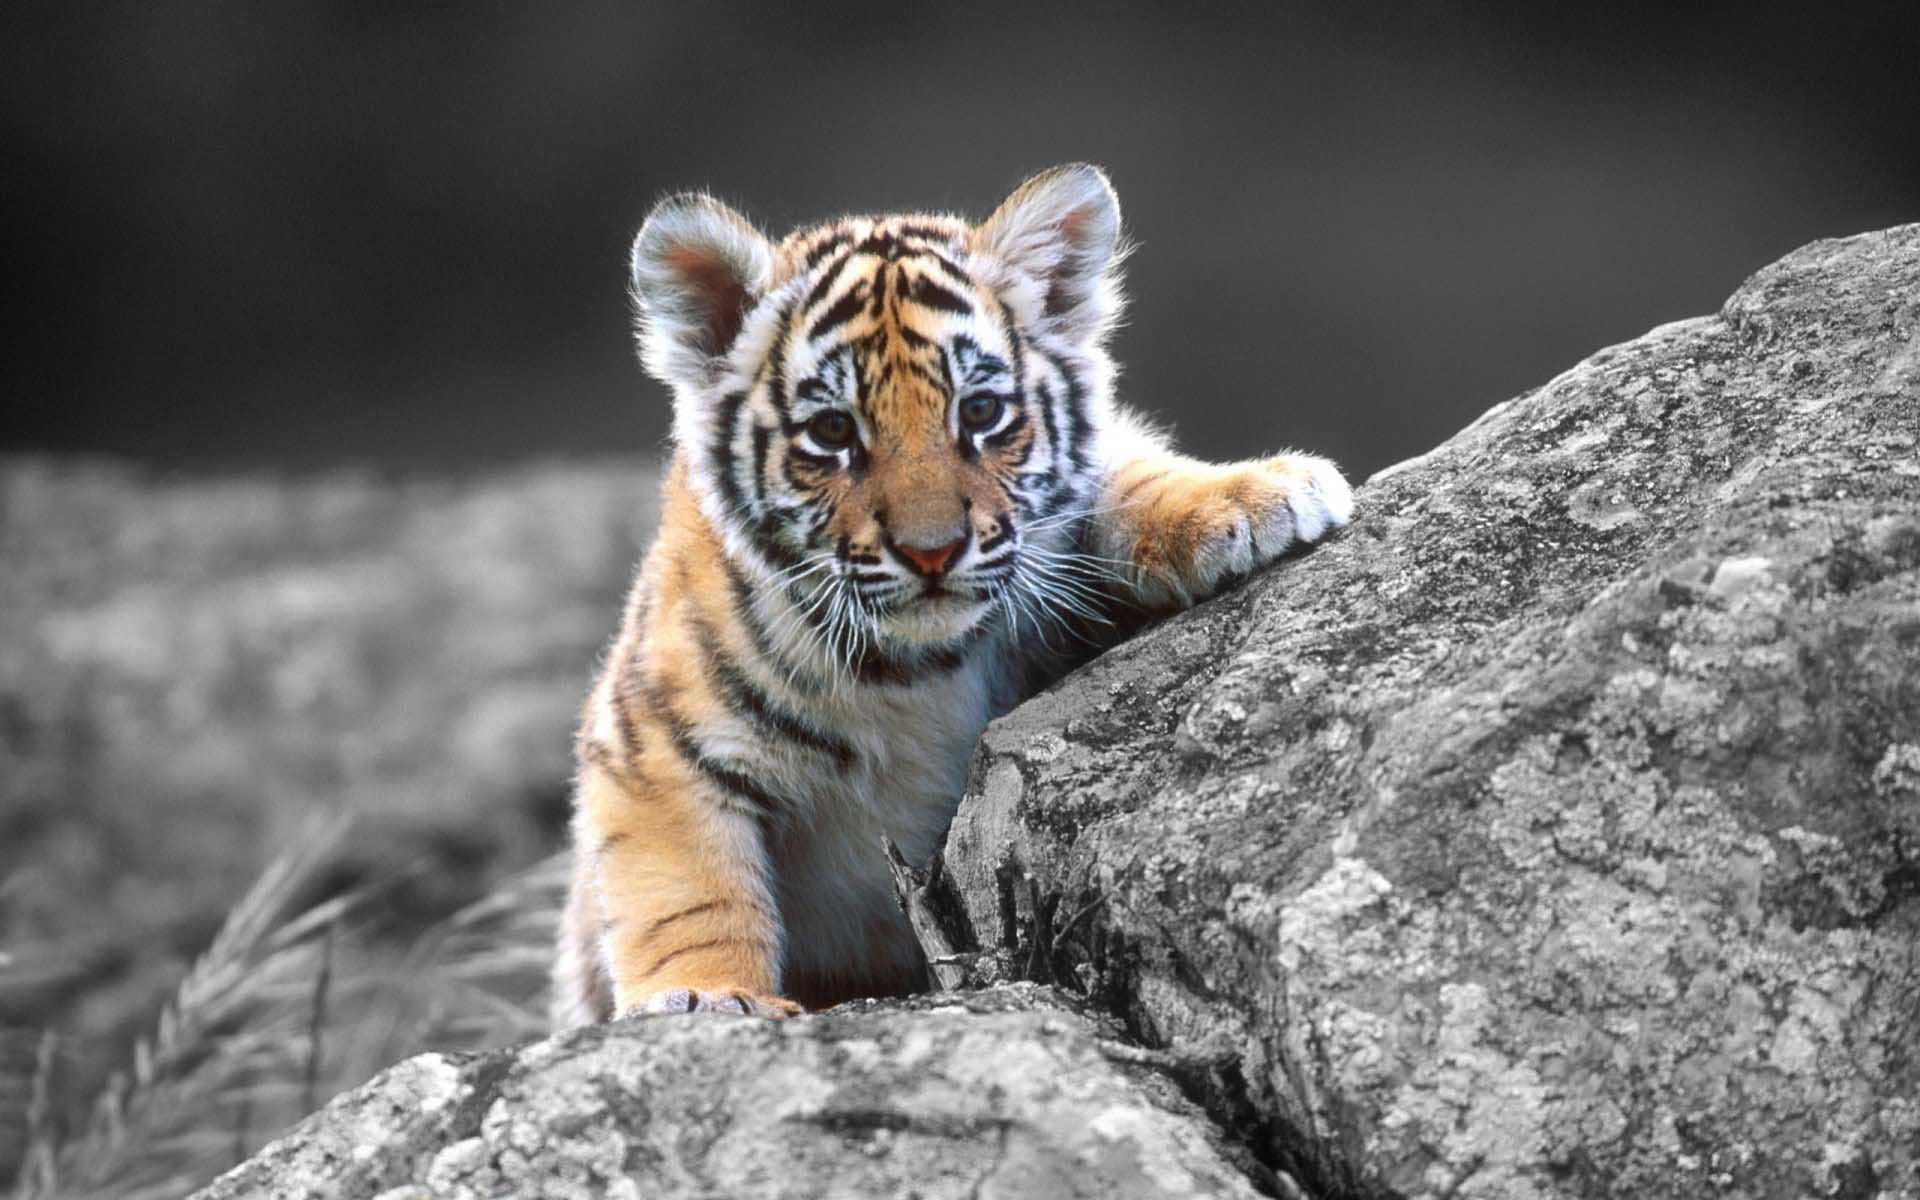 Mobile Desktop Background Bengal Tiger Image Download